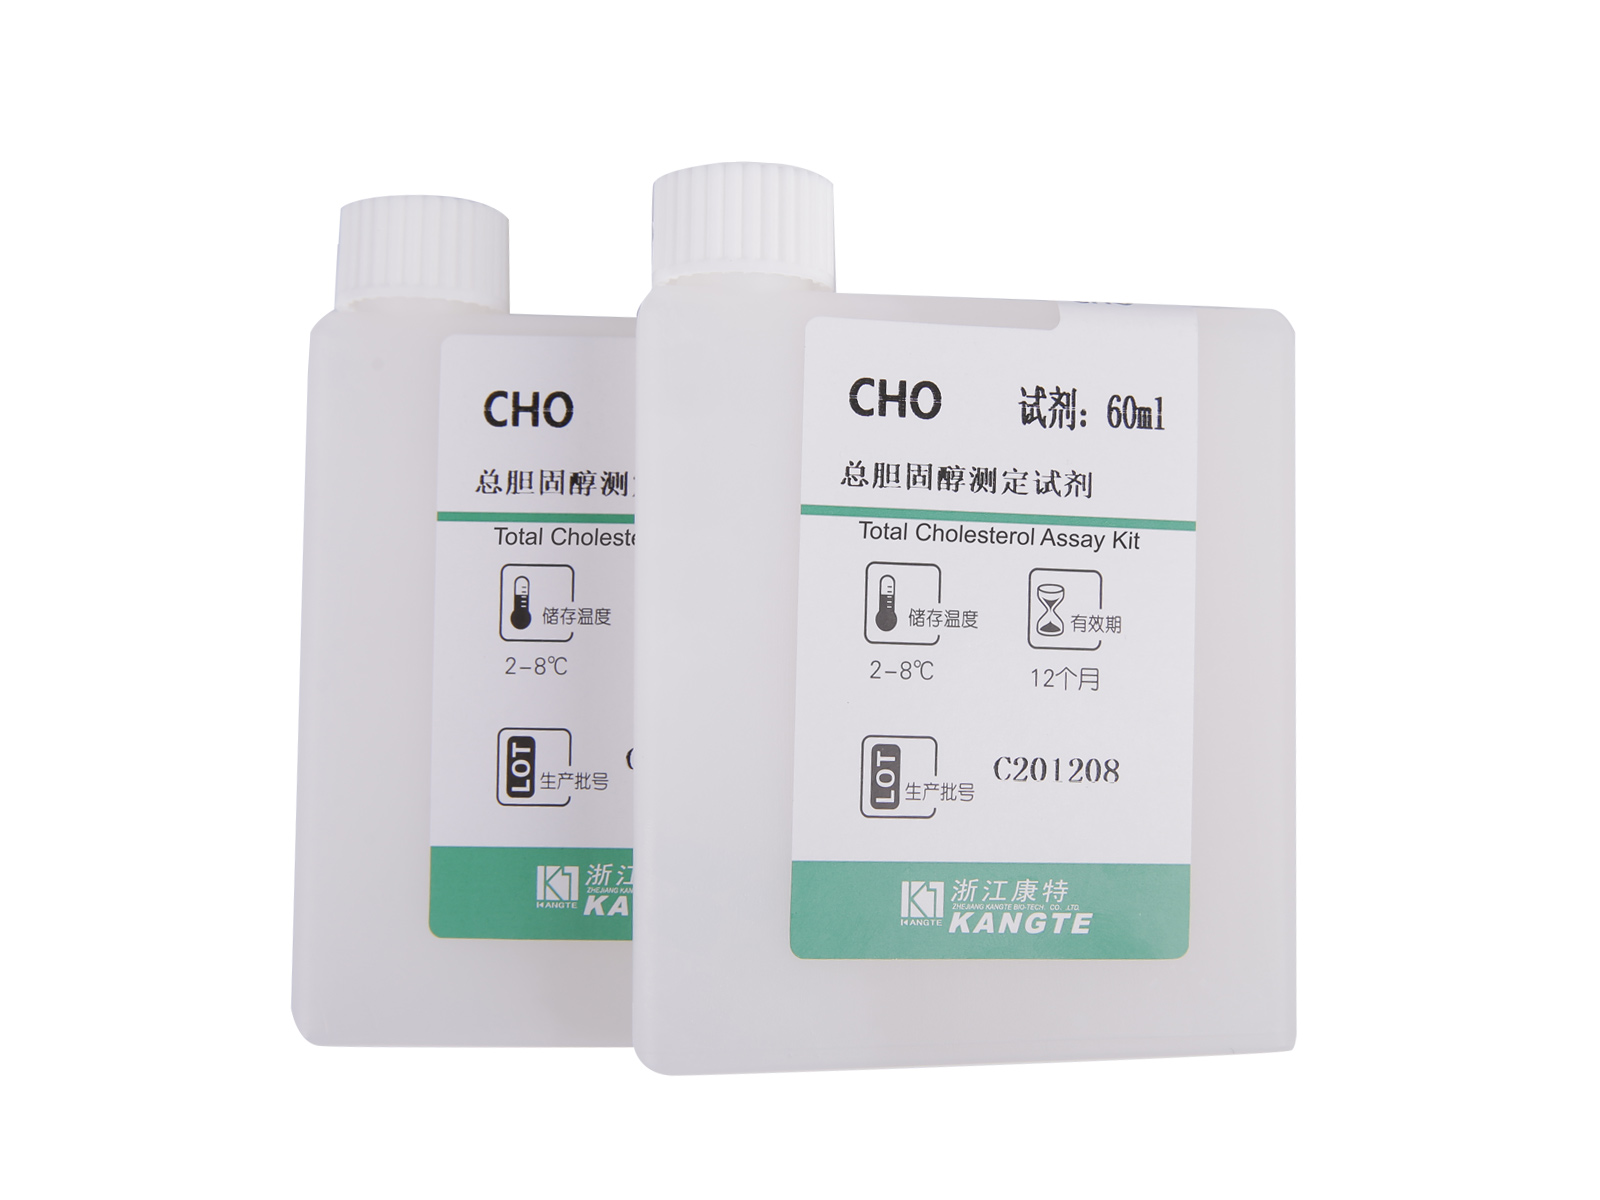 【CHO】Kit de análise de colesterol total (método CHOD-PAP)